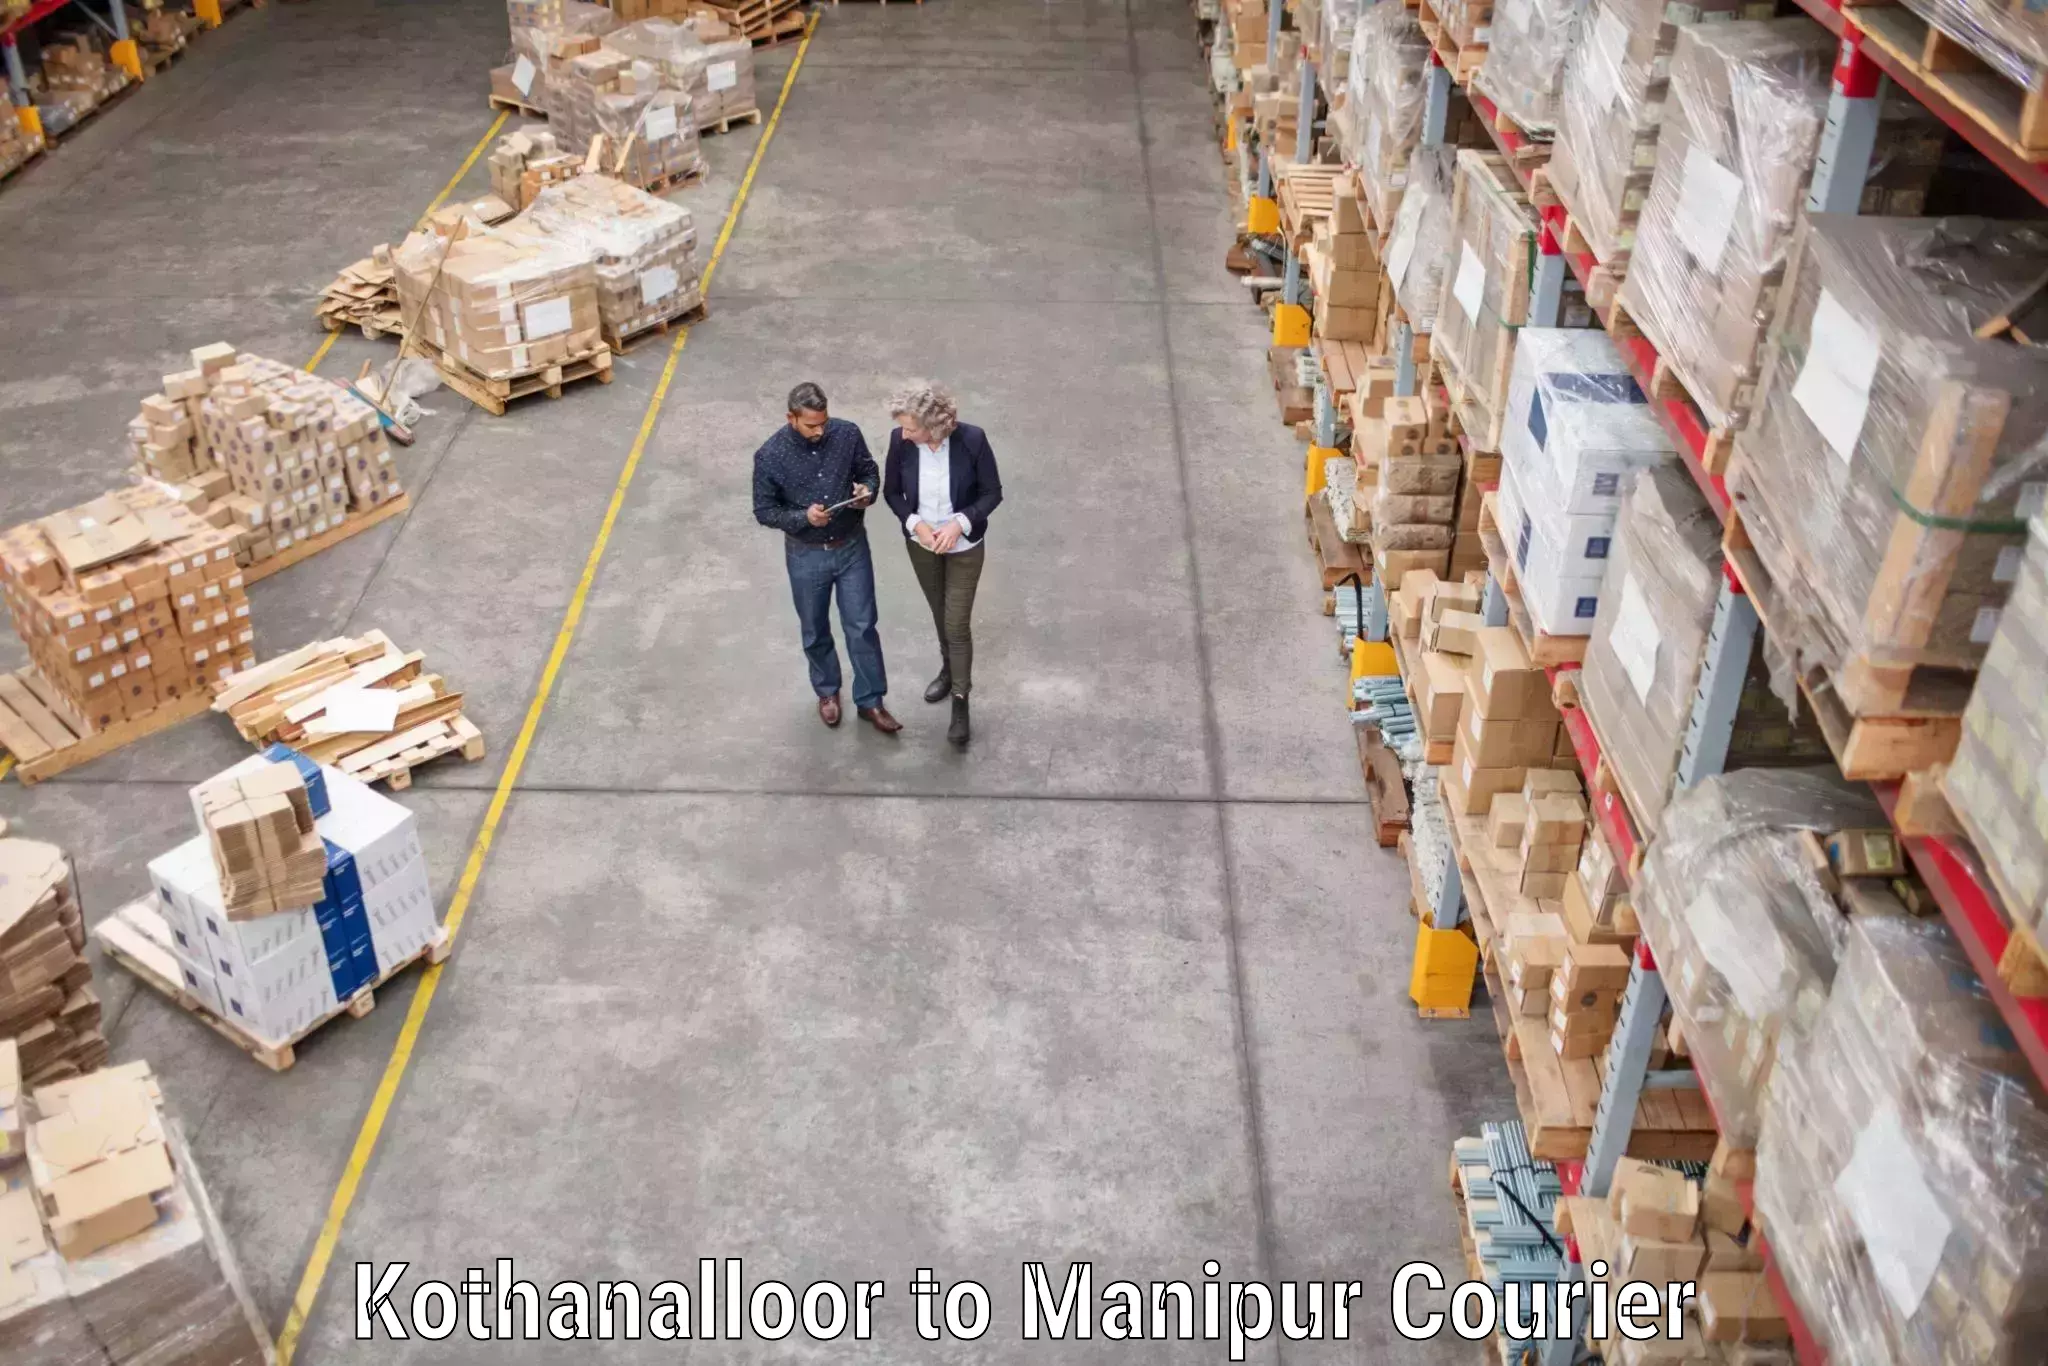 Professional furniture movers Kothanalloor to Churachandpur